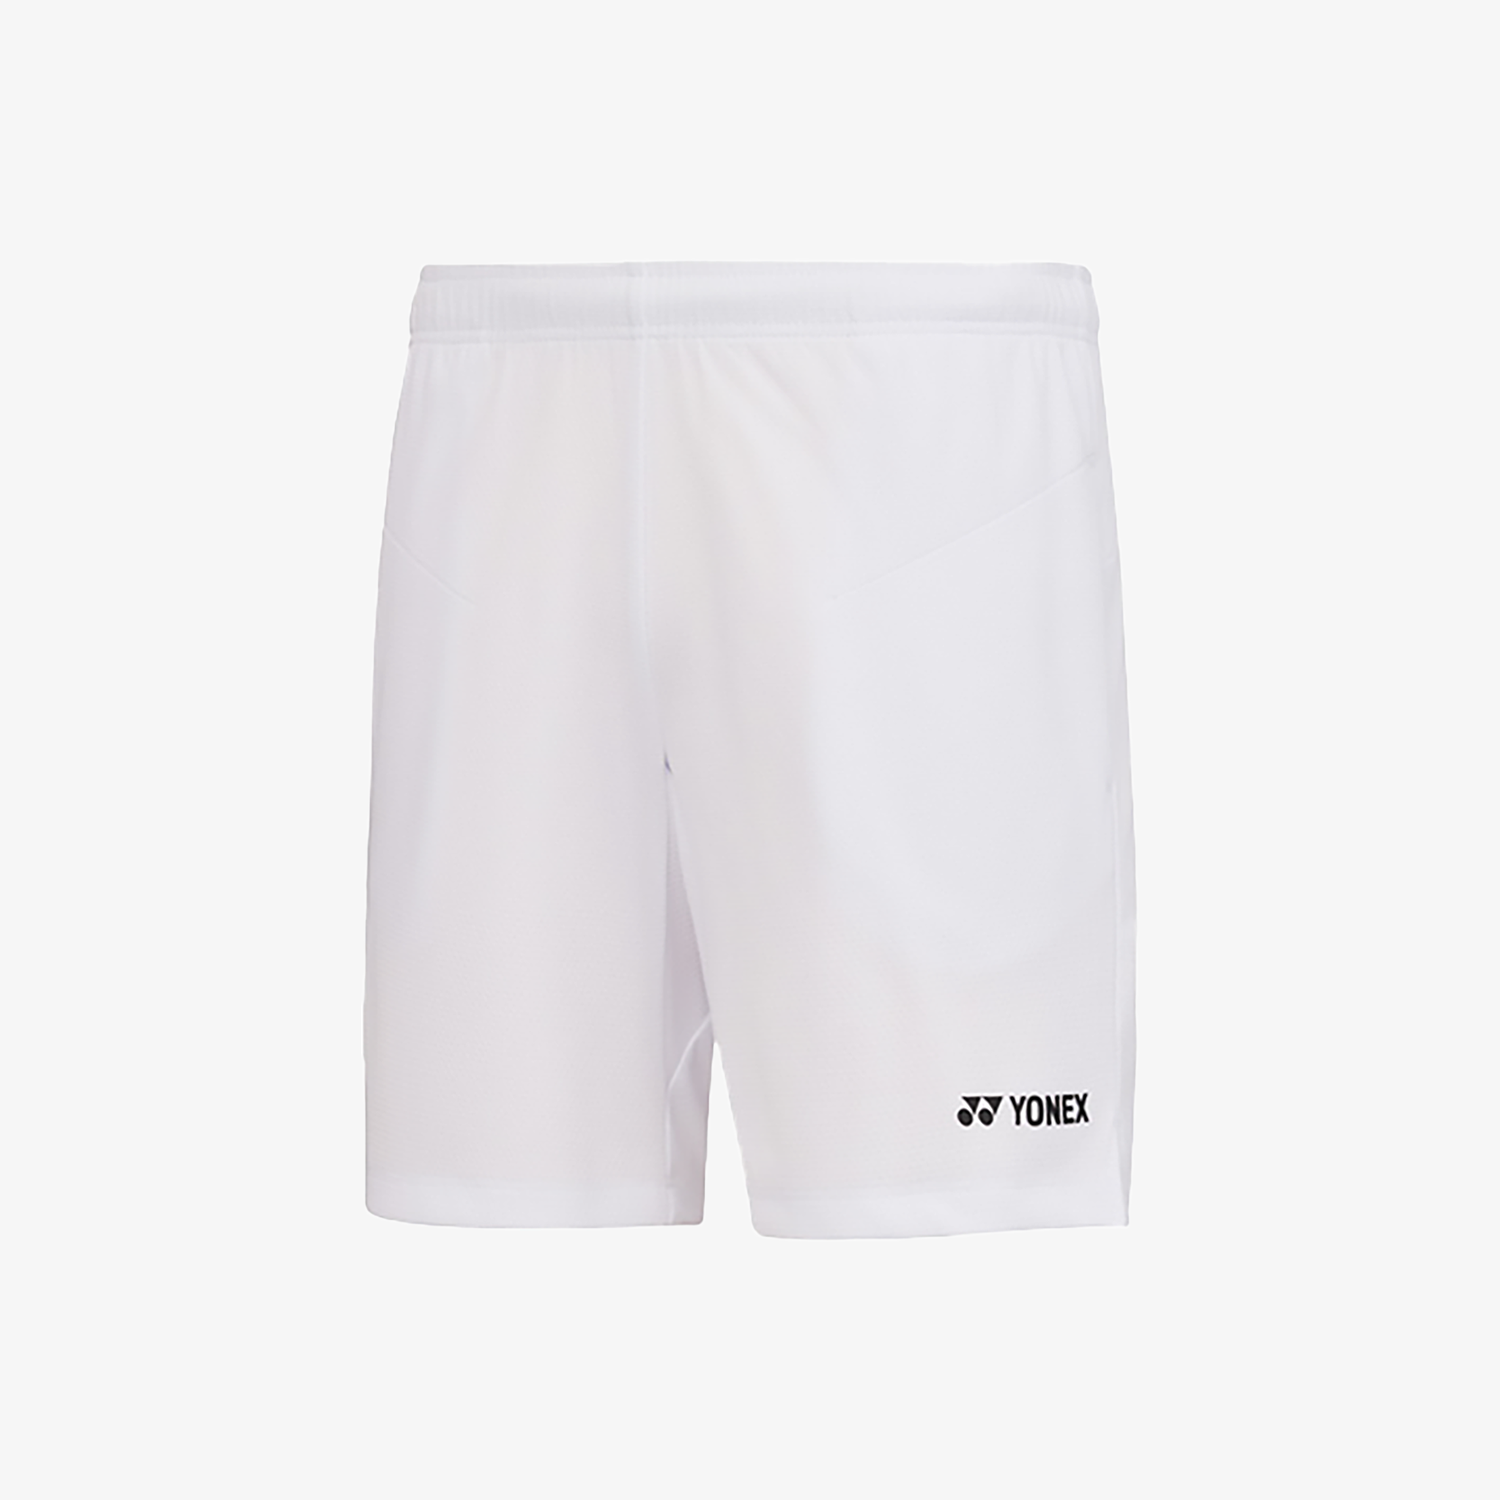 Yonex Men's Woven Shorts 231PH001M (White)